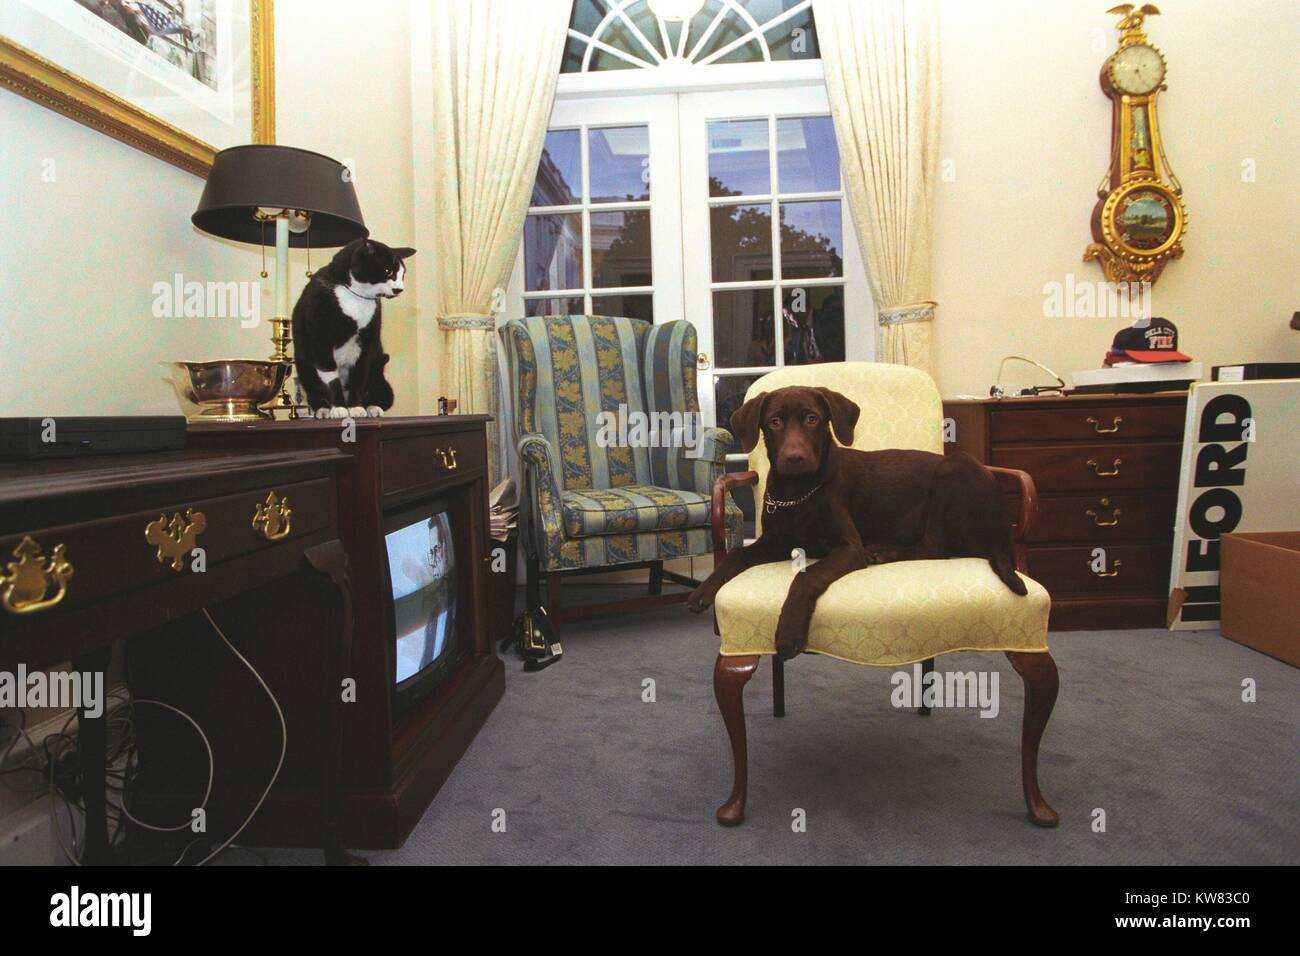 Socken die Katze, mit schwarzem Fell, weiße und gelbe Augen, sitzt oben auf einem Fernseher Schrank auf Buddy der Hund, einen braunen Labrador suchen, in einem gelben Sessel sitzen, die ersten Haustiere von Präsident Bill Clinton und der ersten Frau Hillary Rodham Clinton, dargestellt in der äußeren Oval Office, Washington, District of Columbia, 5. Januar 1998. Stockfoto